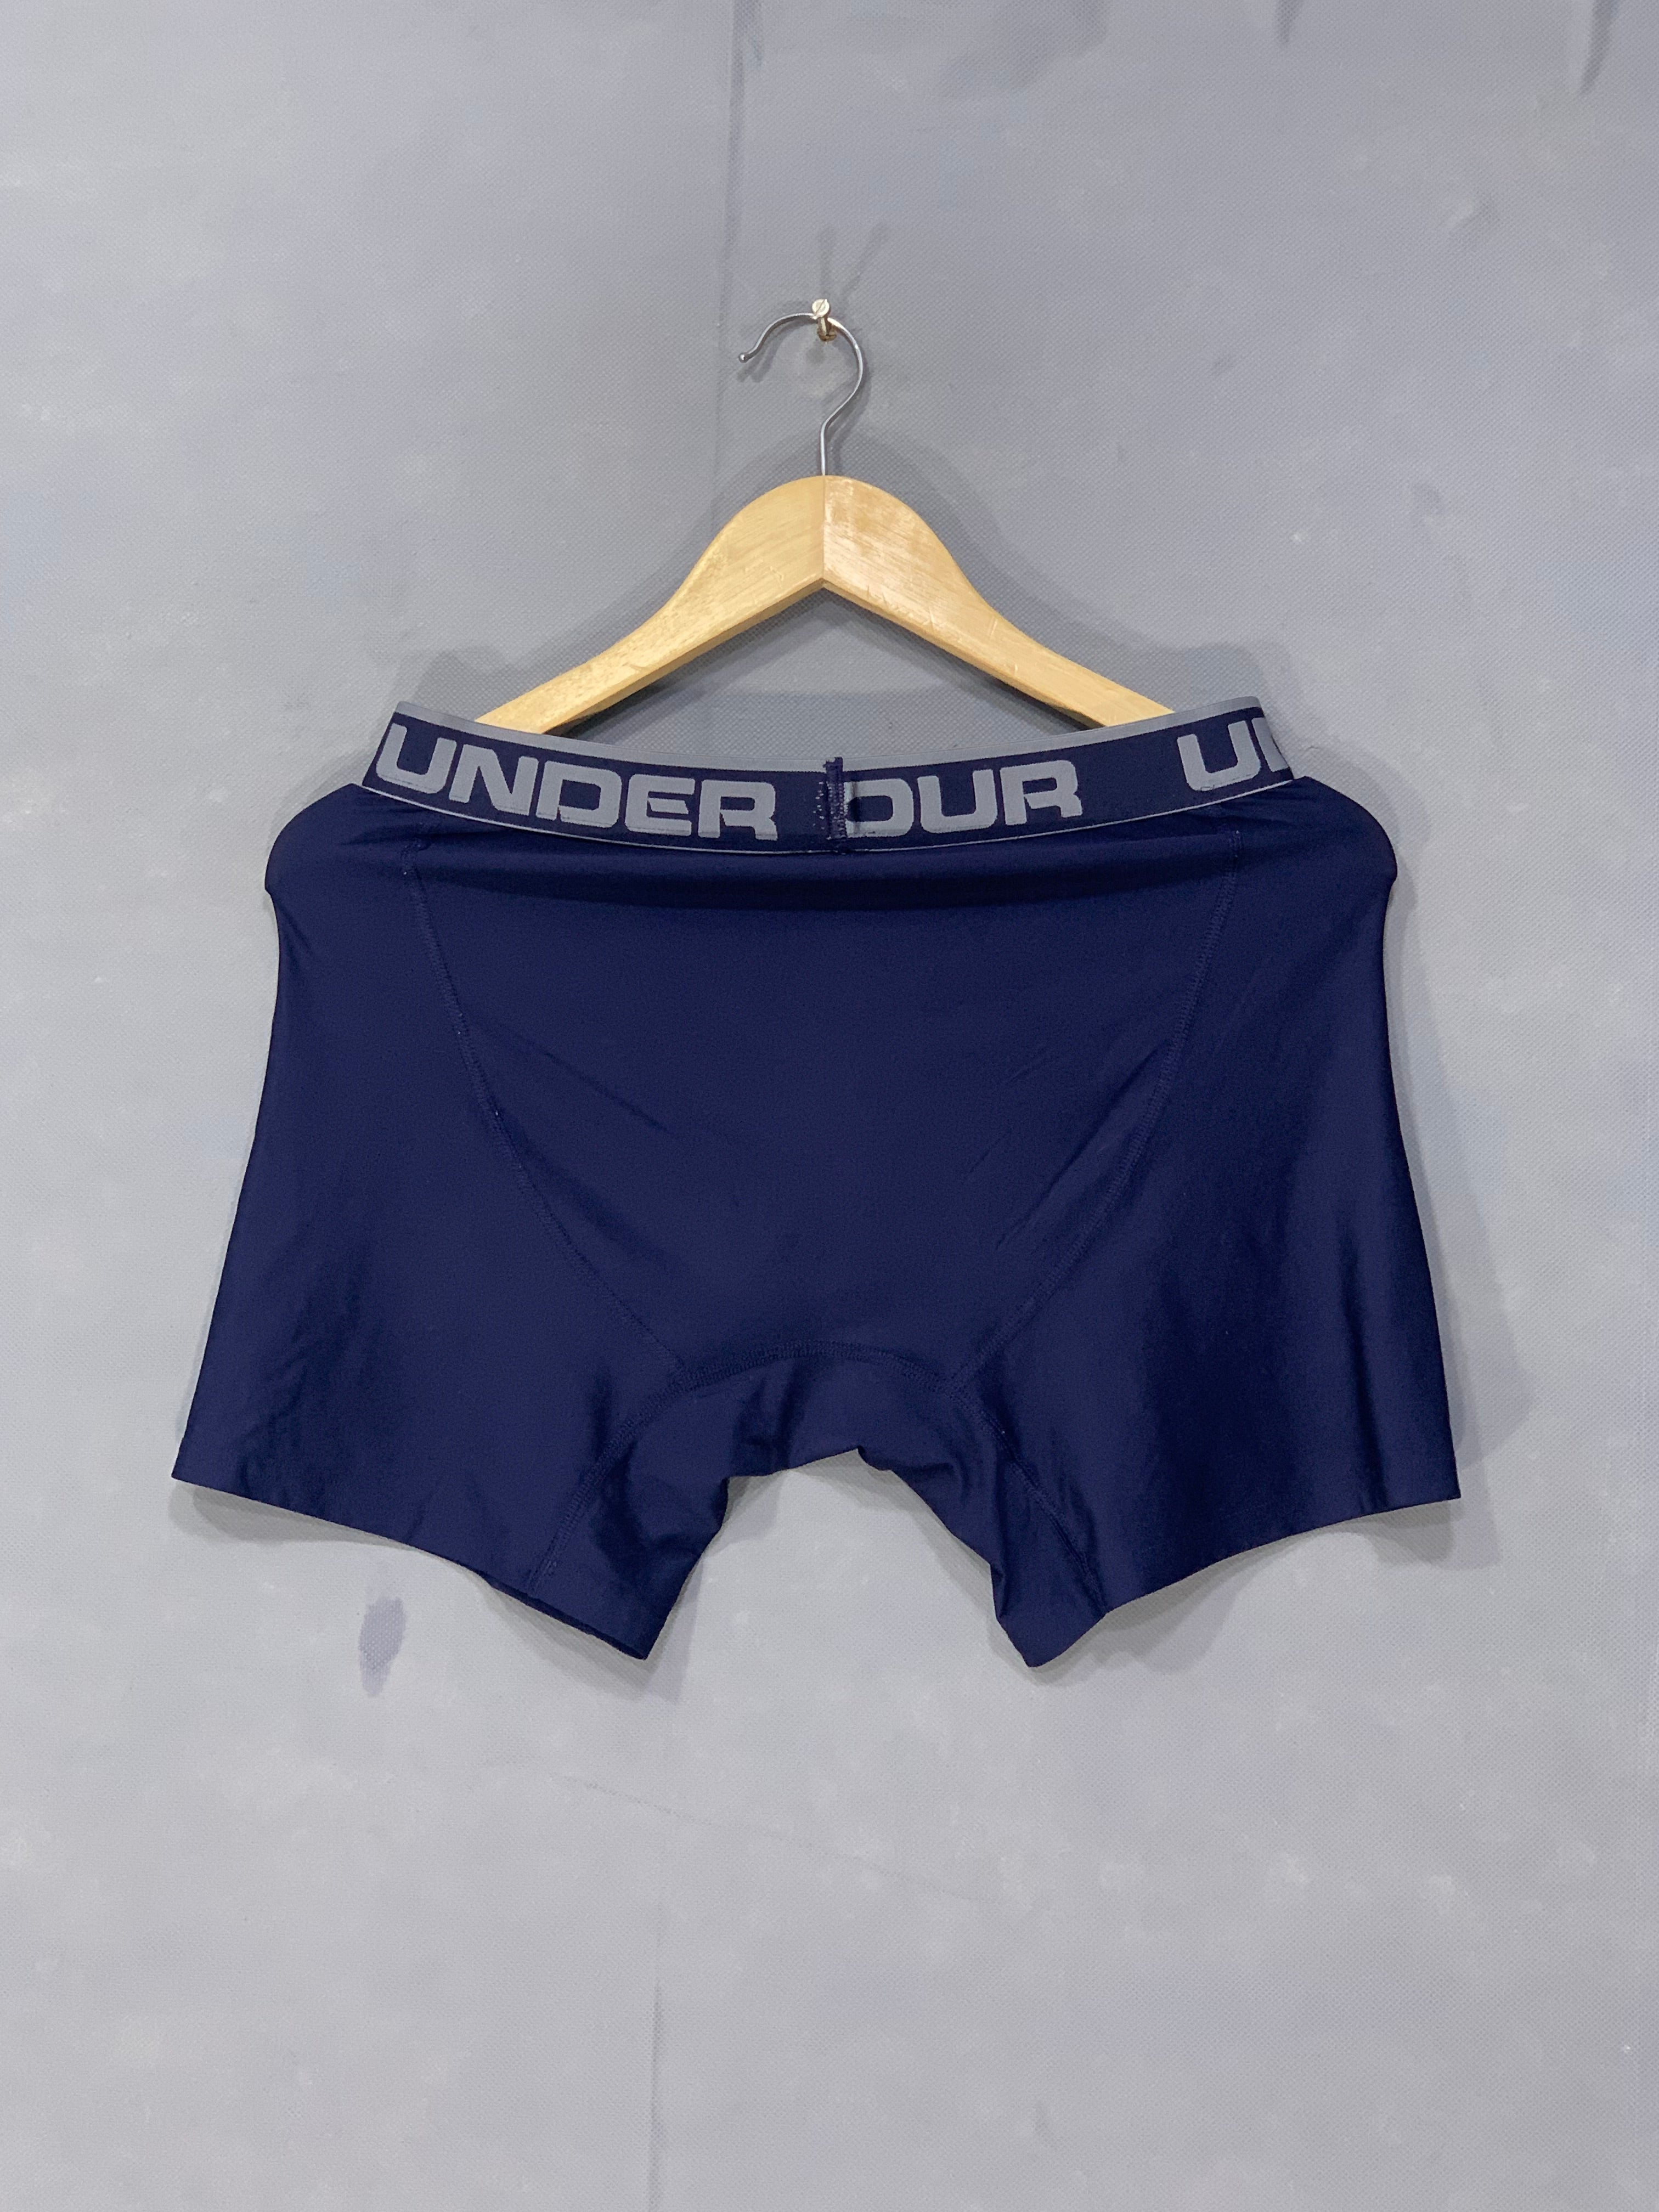 Under Armour Branded Boxer Underwear For Men